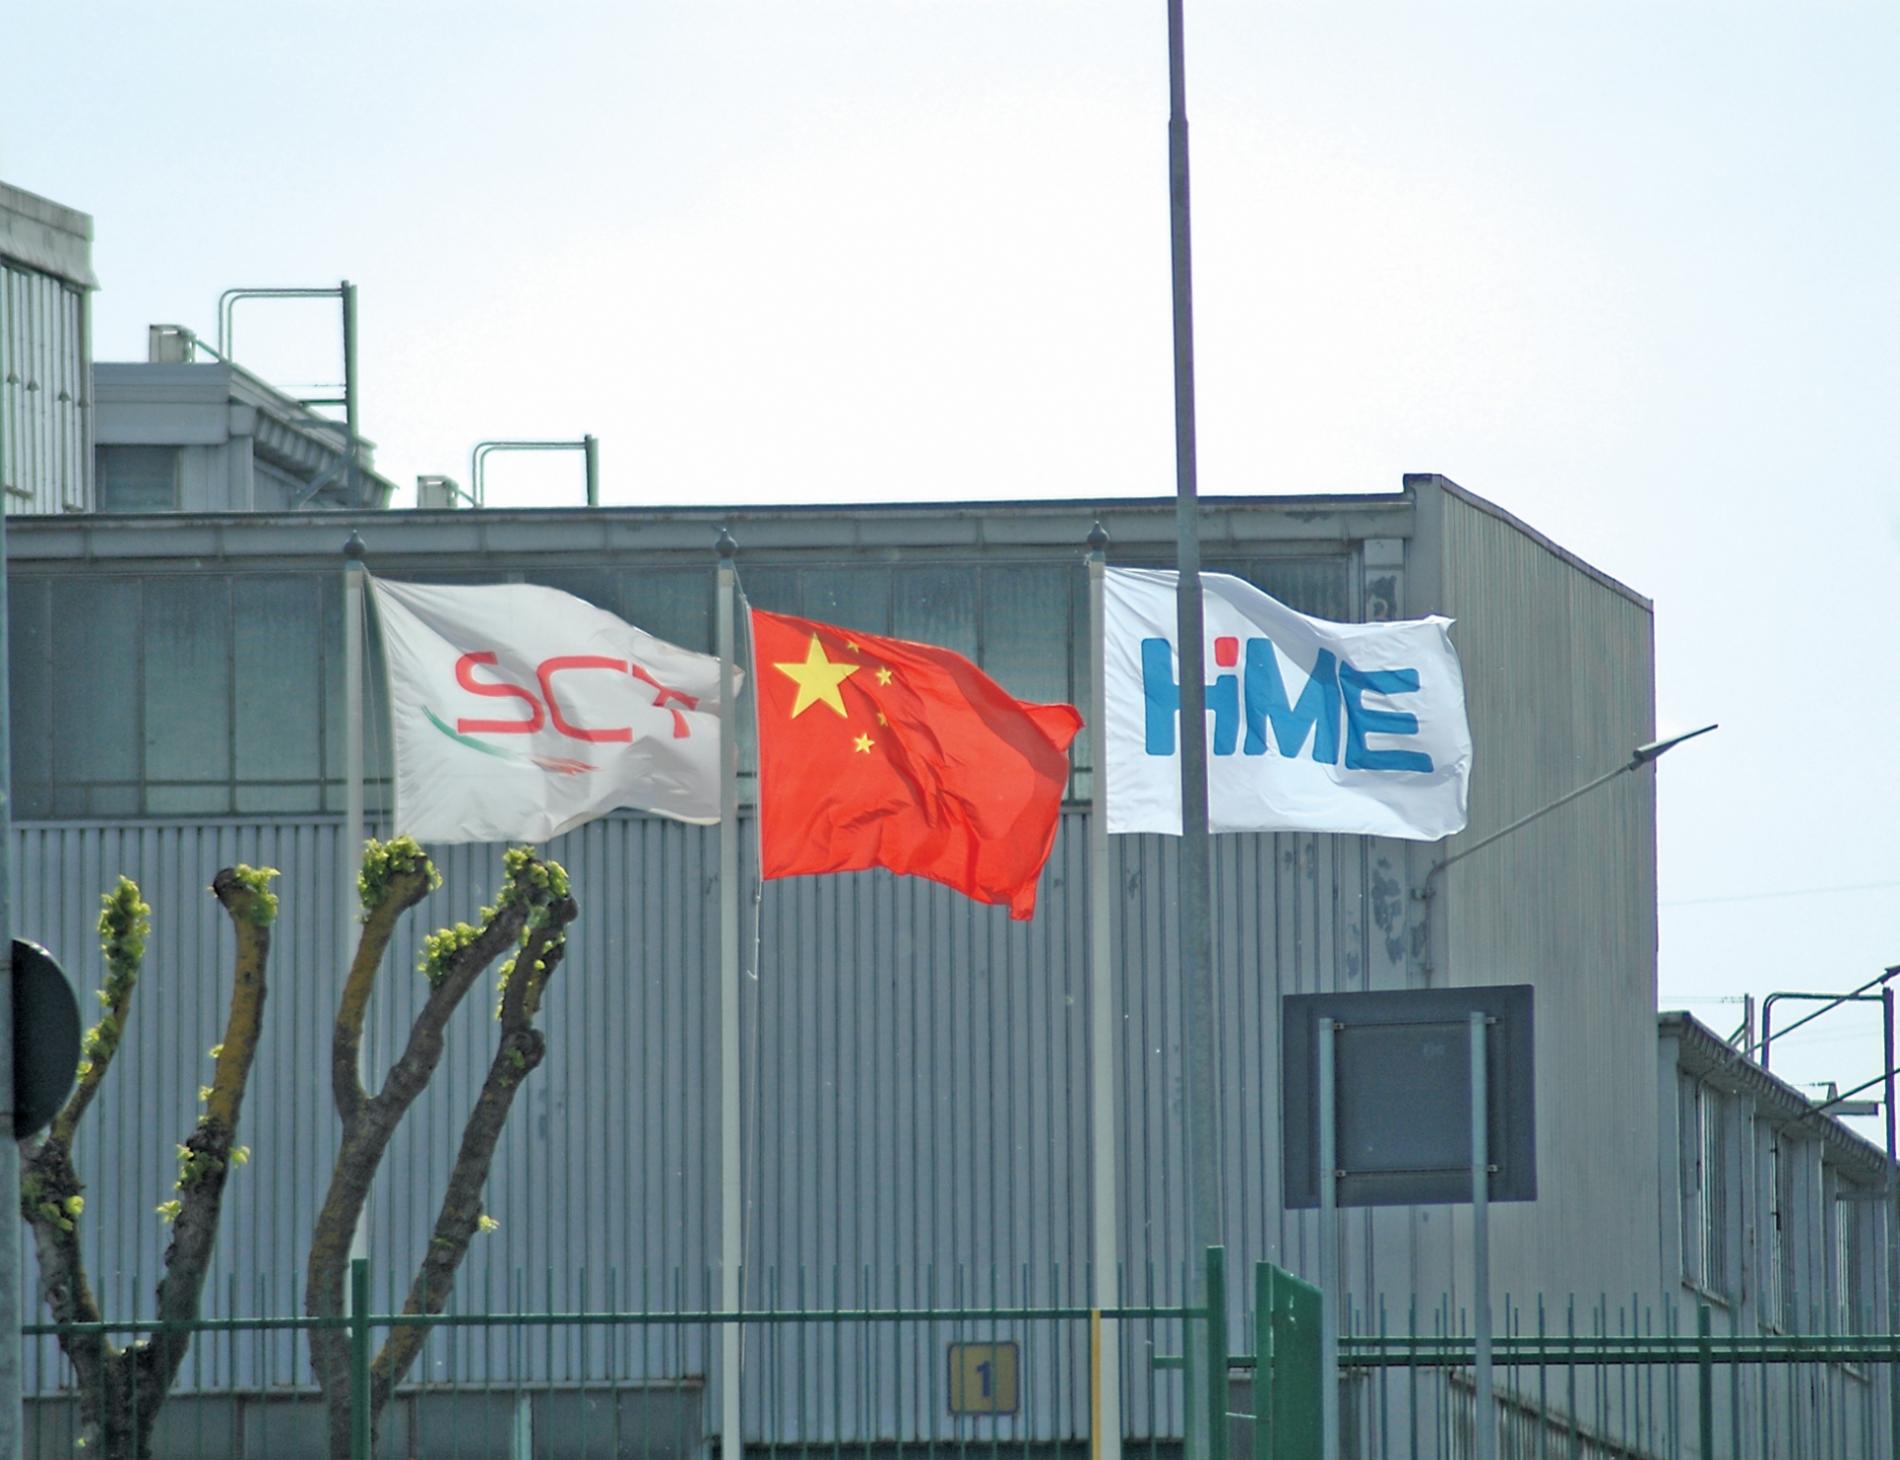 Kme-Sct, nuovo accordo con l’azienda: i lavoratori dicono sì